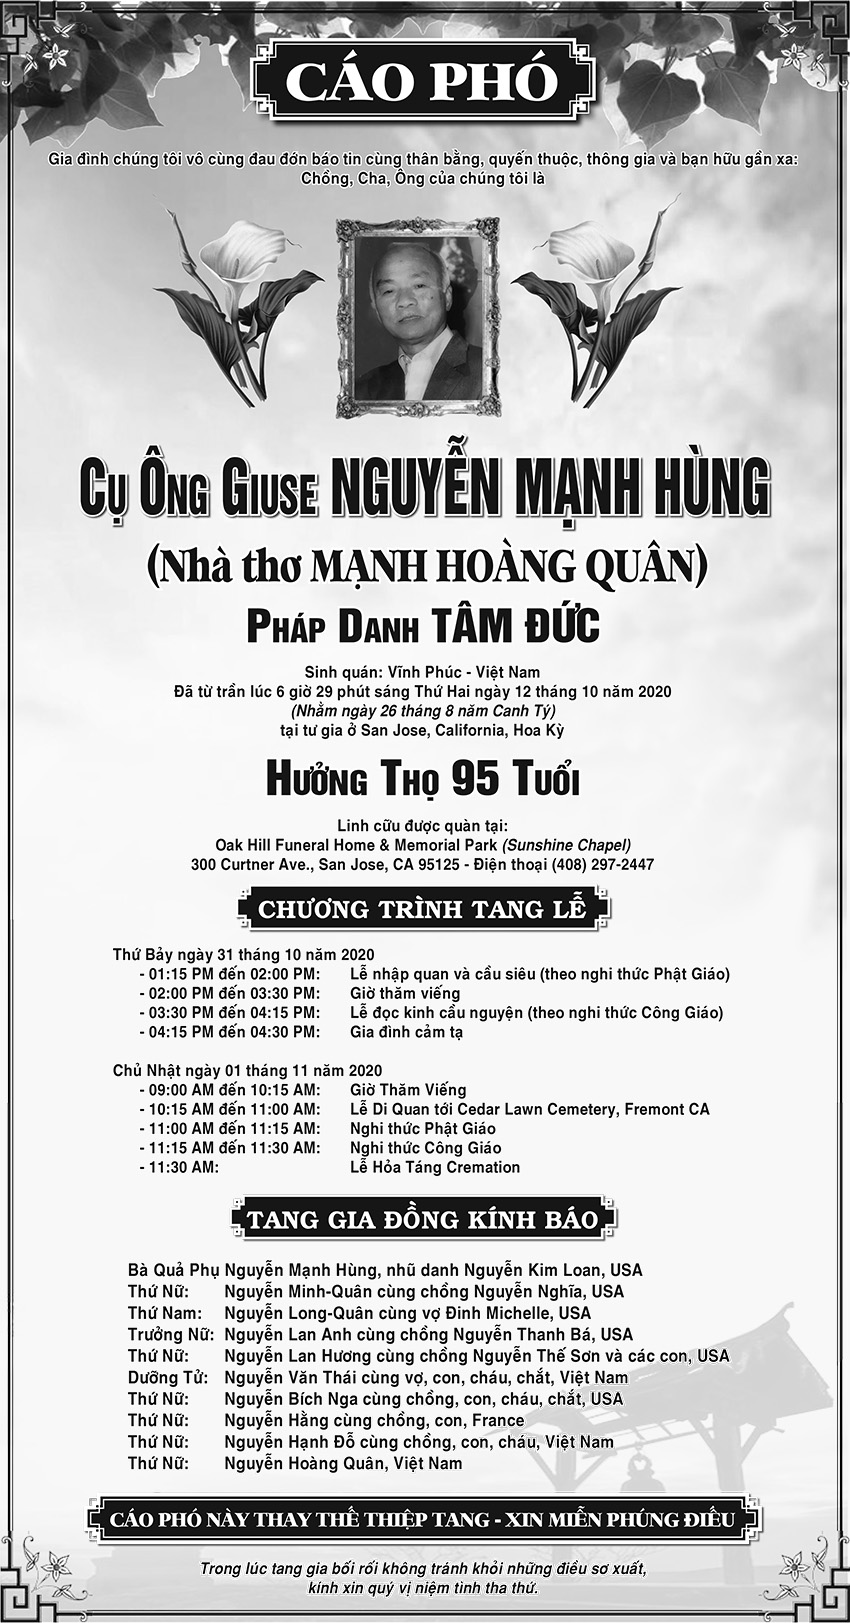 NguyenManhHung